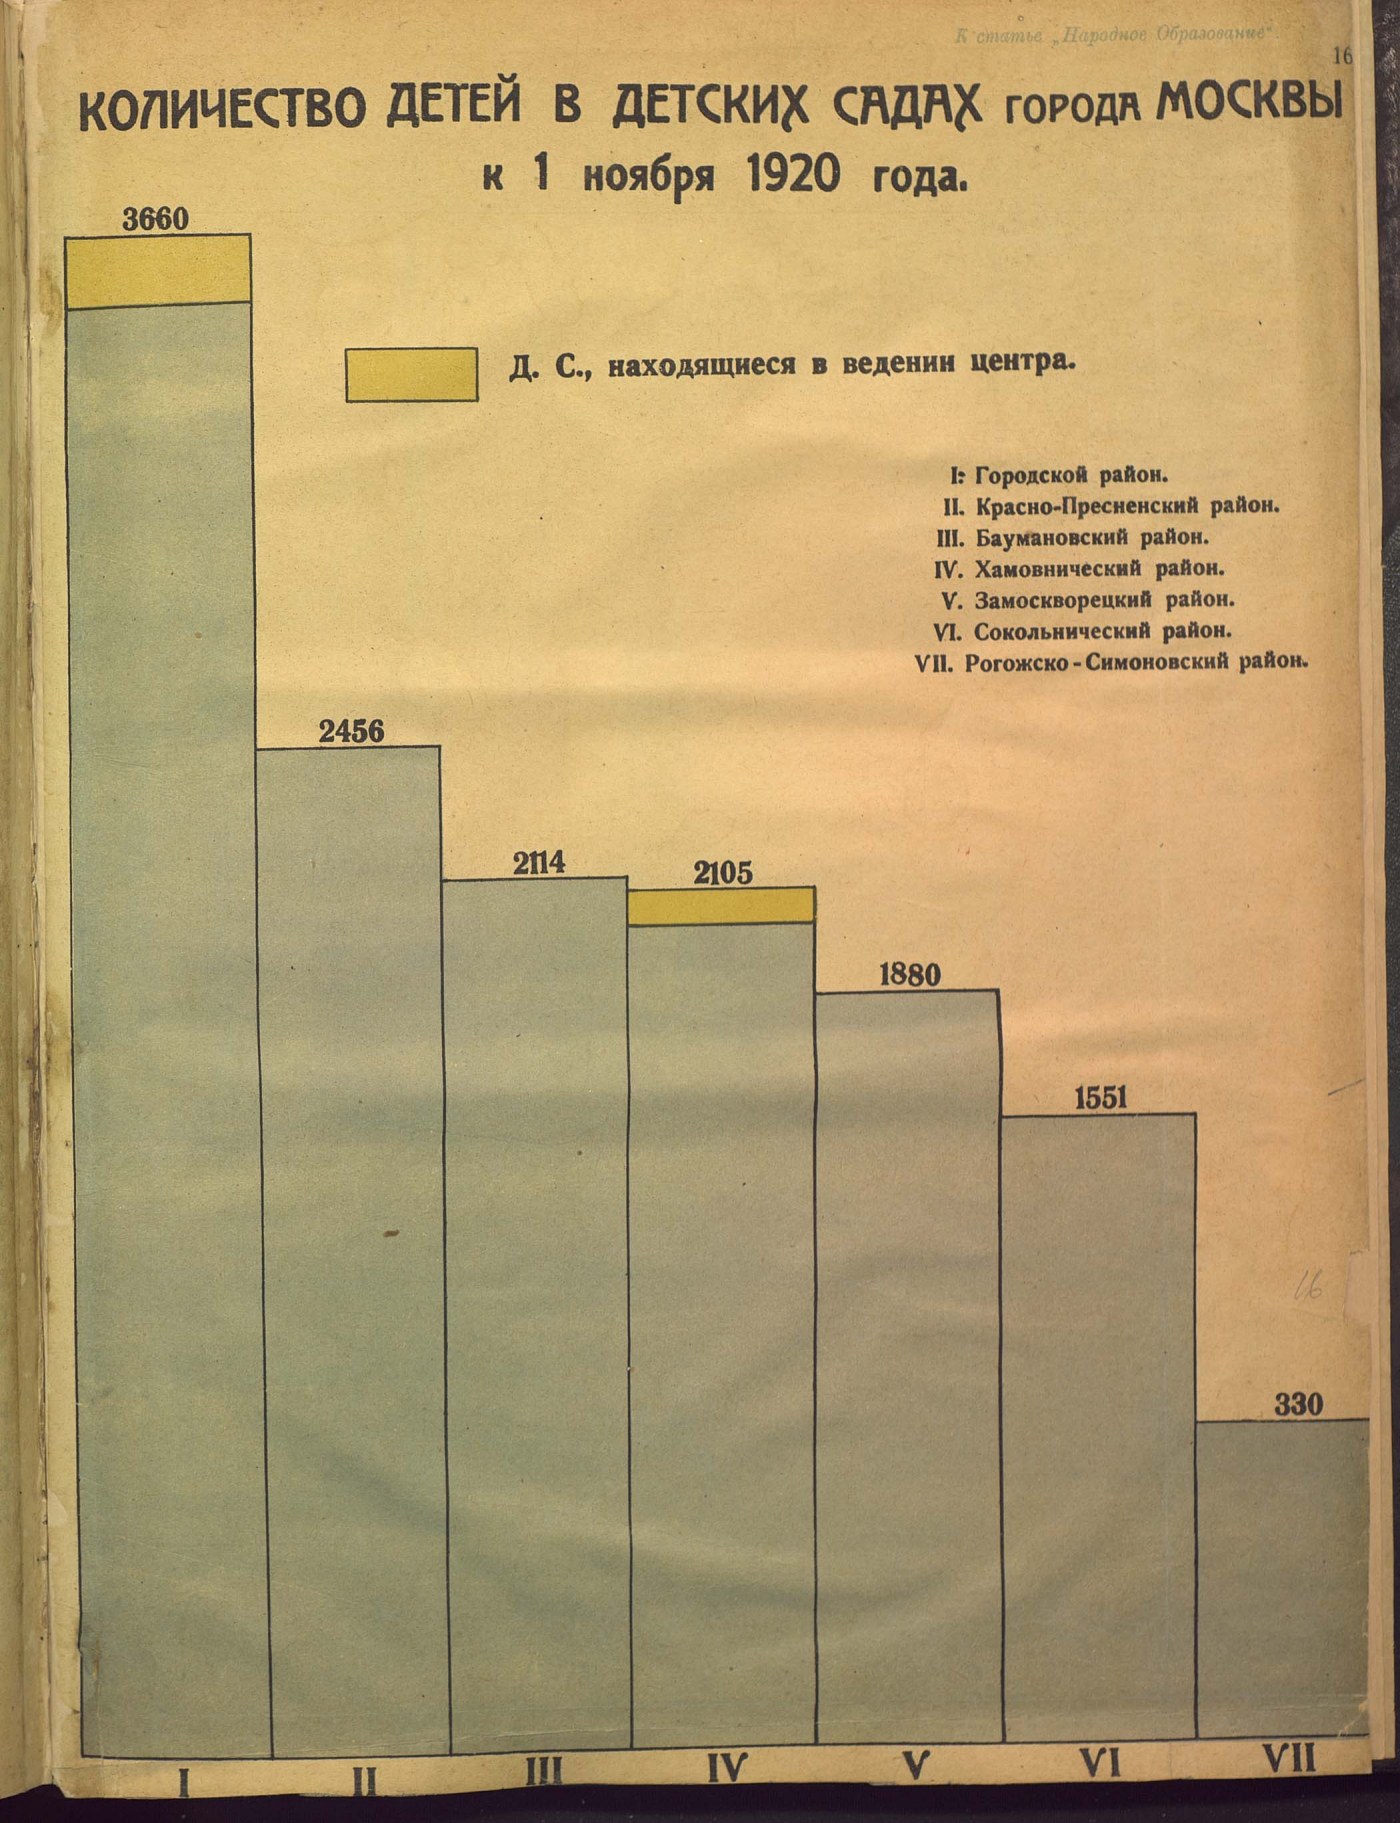 Количество детей в детских садах города Москвы к 1 ноября 1920 г.